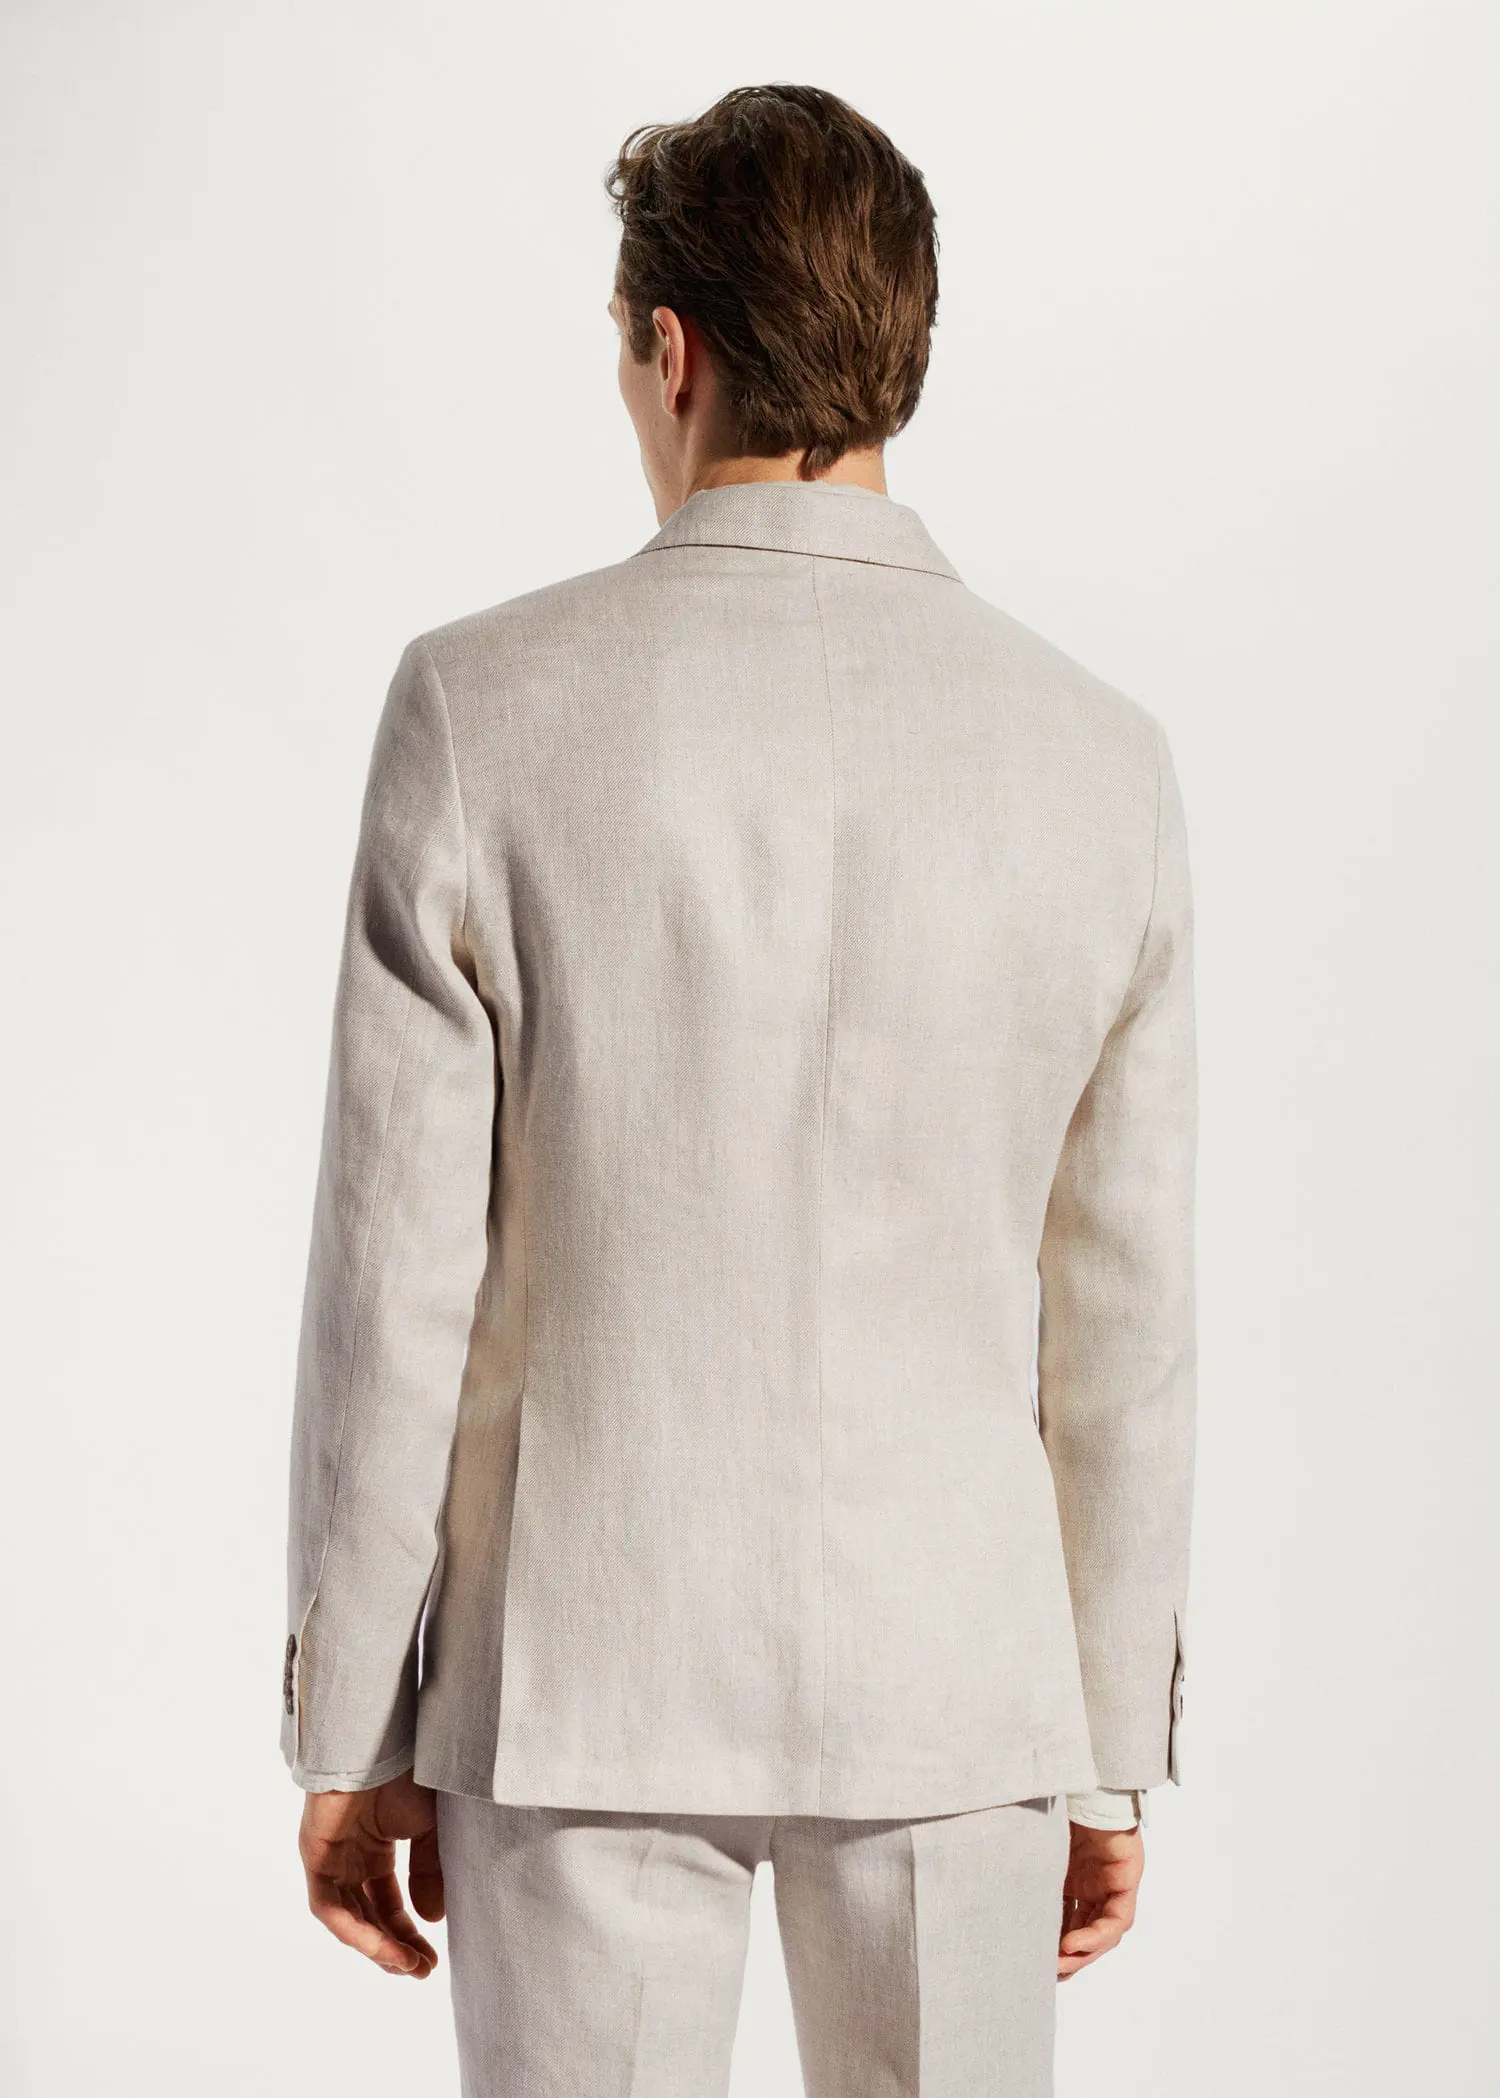 Mango Blazer suit 100% linen. a man wearing a suit jacket and pants. 